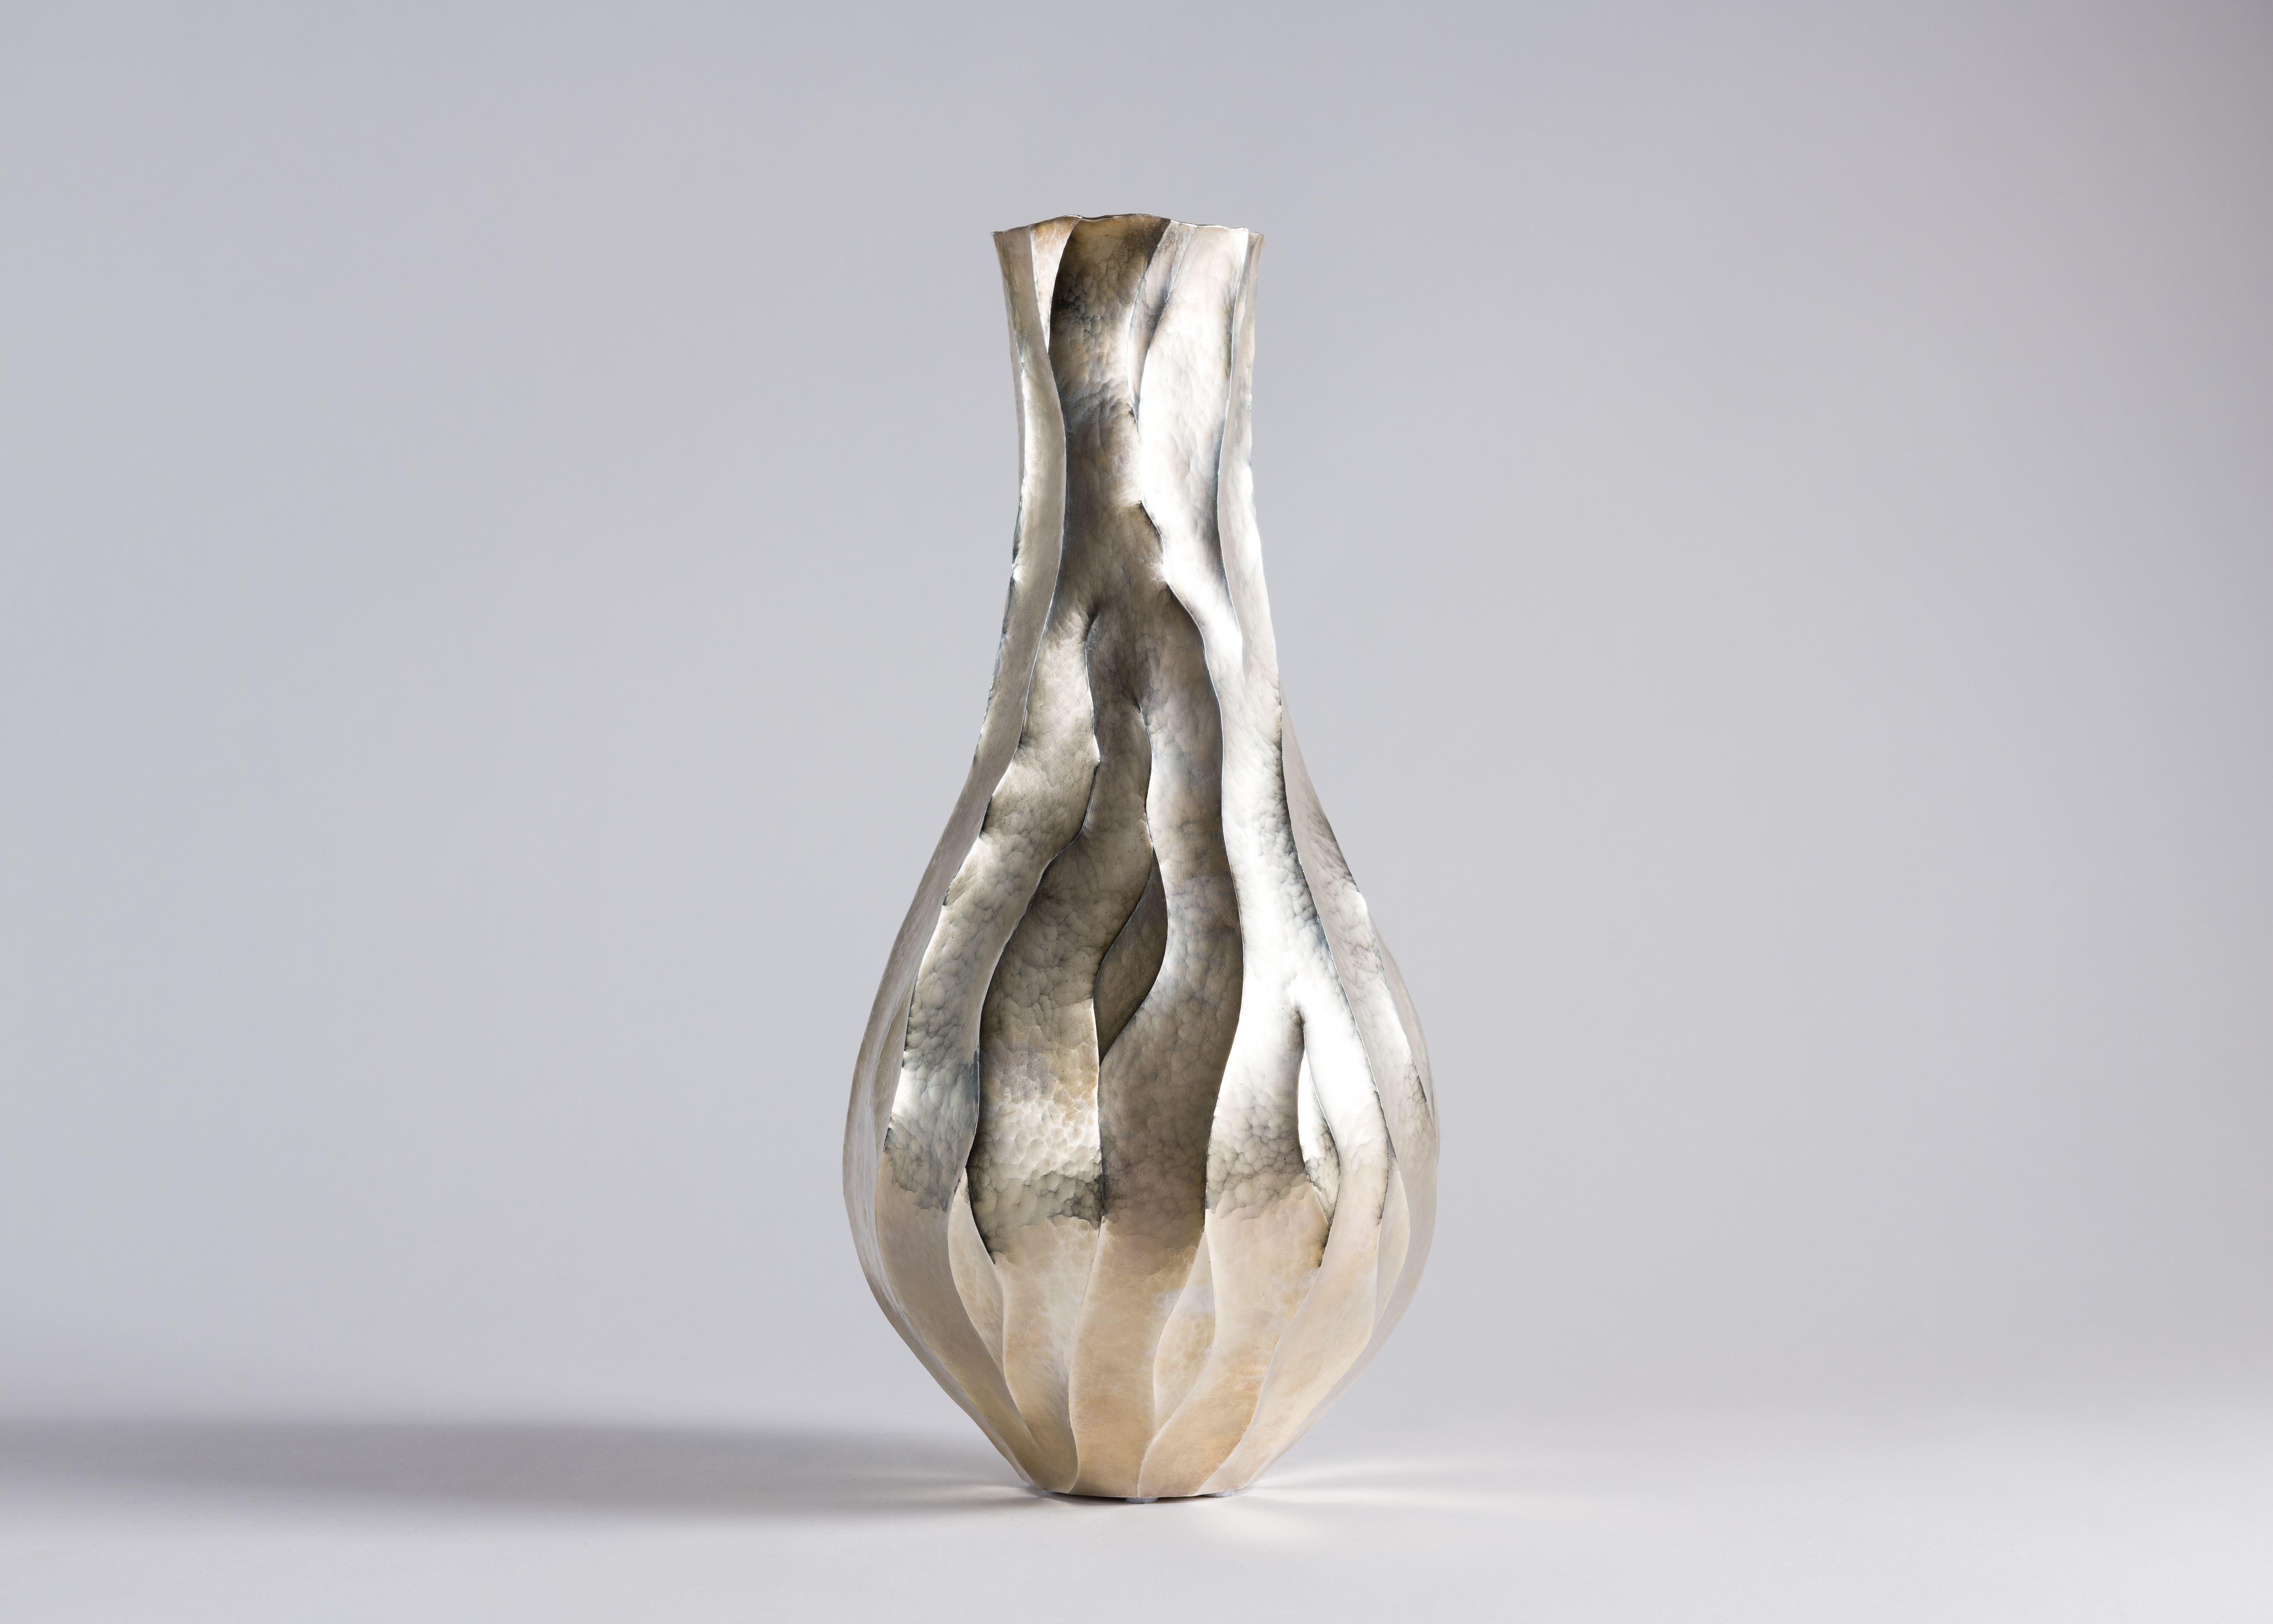 Silvered Emiliano Celiz, Abriendo Caminos, Contemporary Sculptural Vase, Argentina, 2018